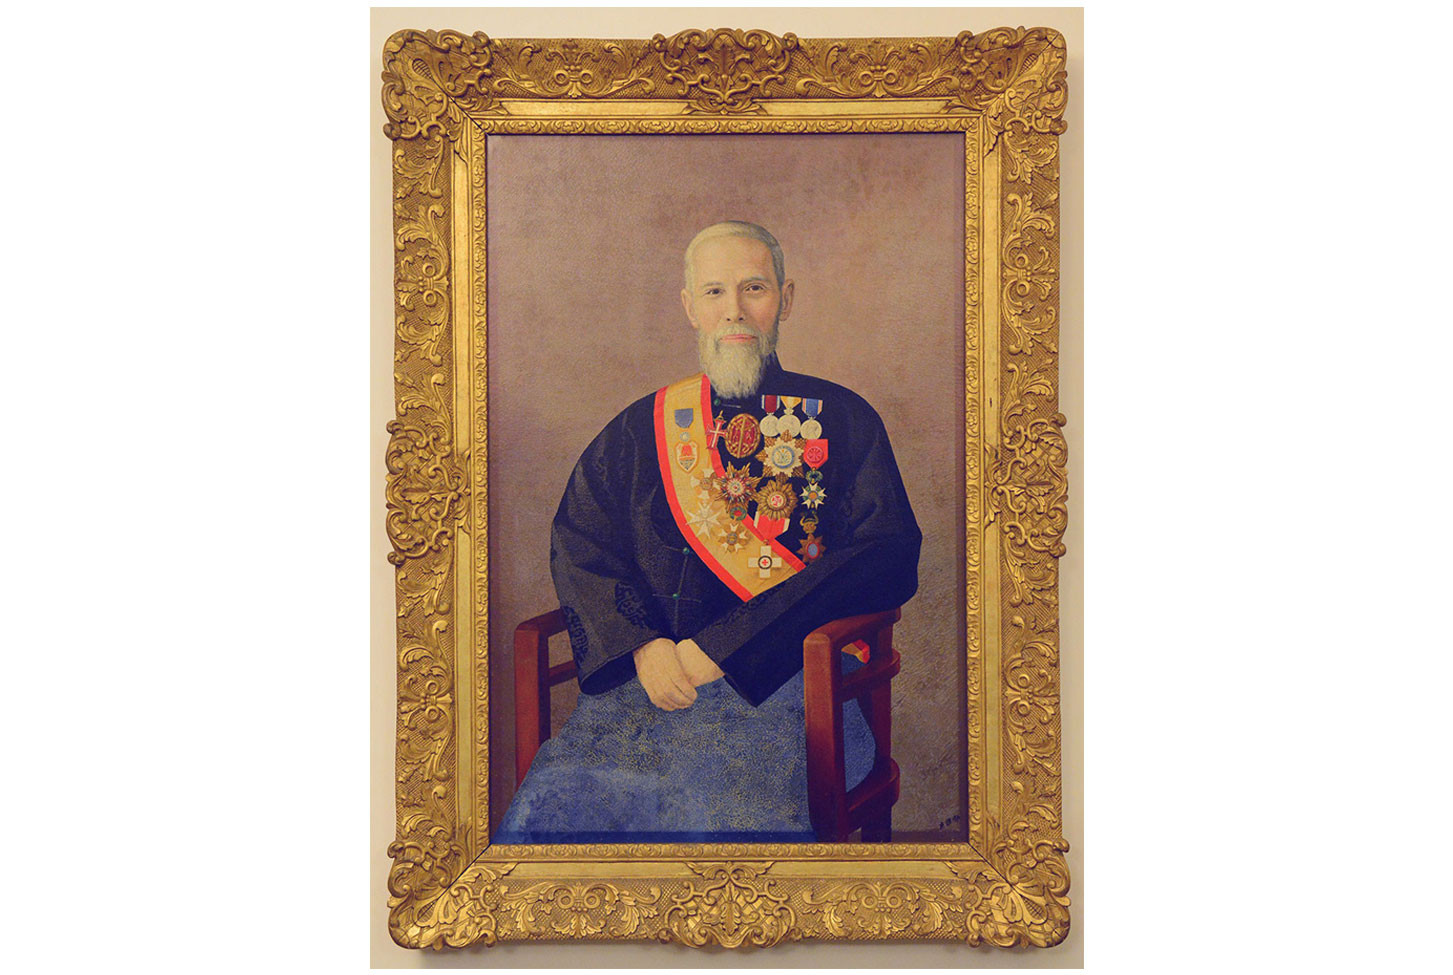 Sir Robert Ho Tung